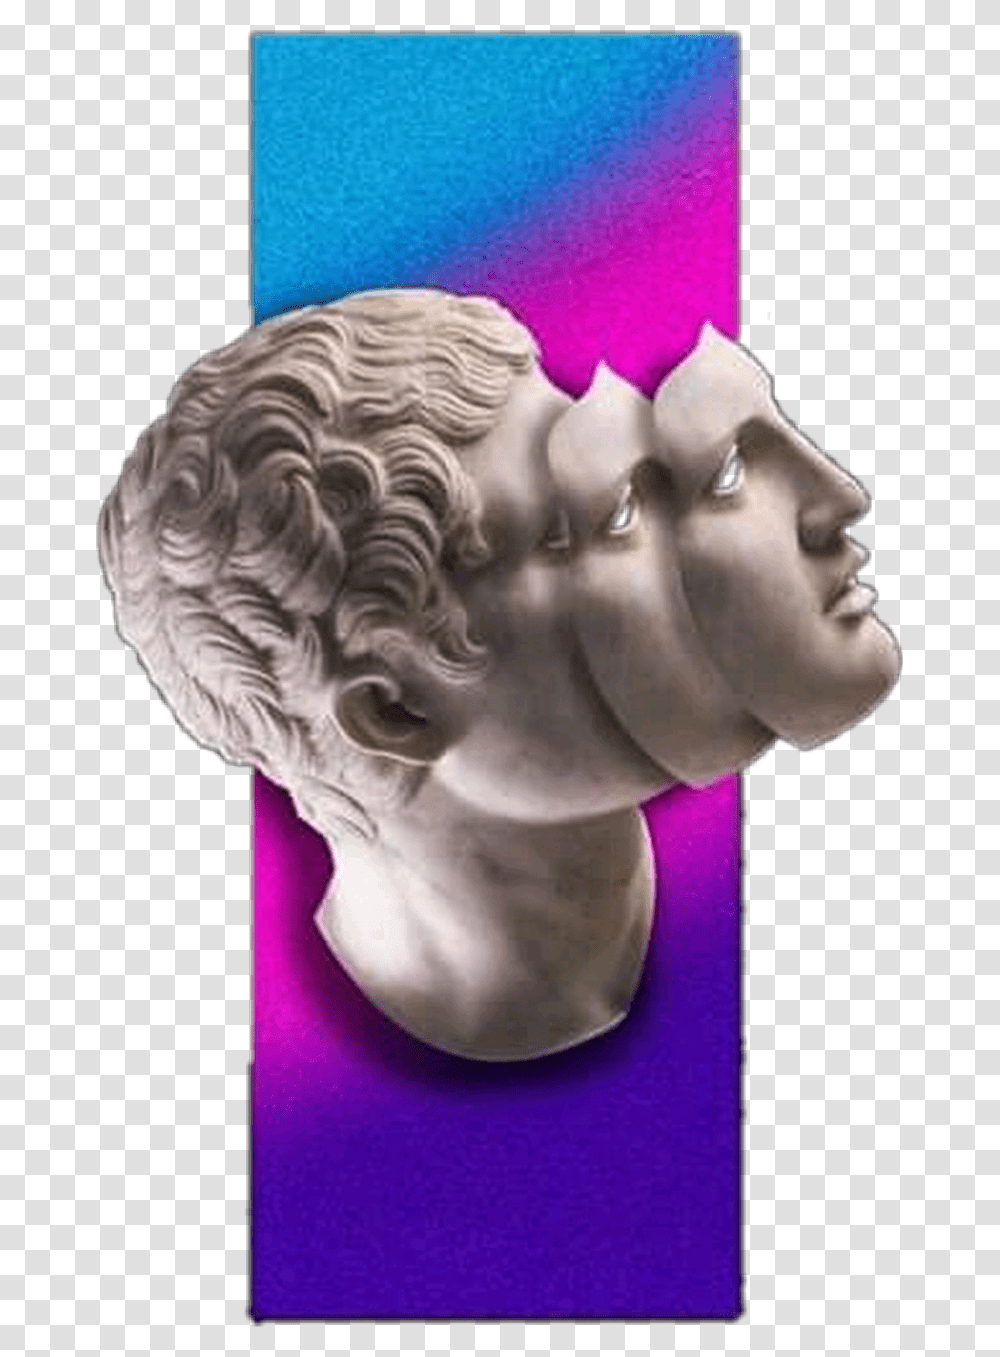 Glitch Glitchplease Face Cara Estatua Tumblr Glitch Art, Sculpture, Statue, Head, Figurine Transparent Png